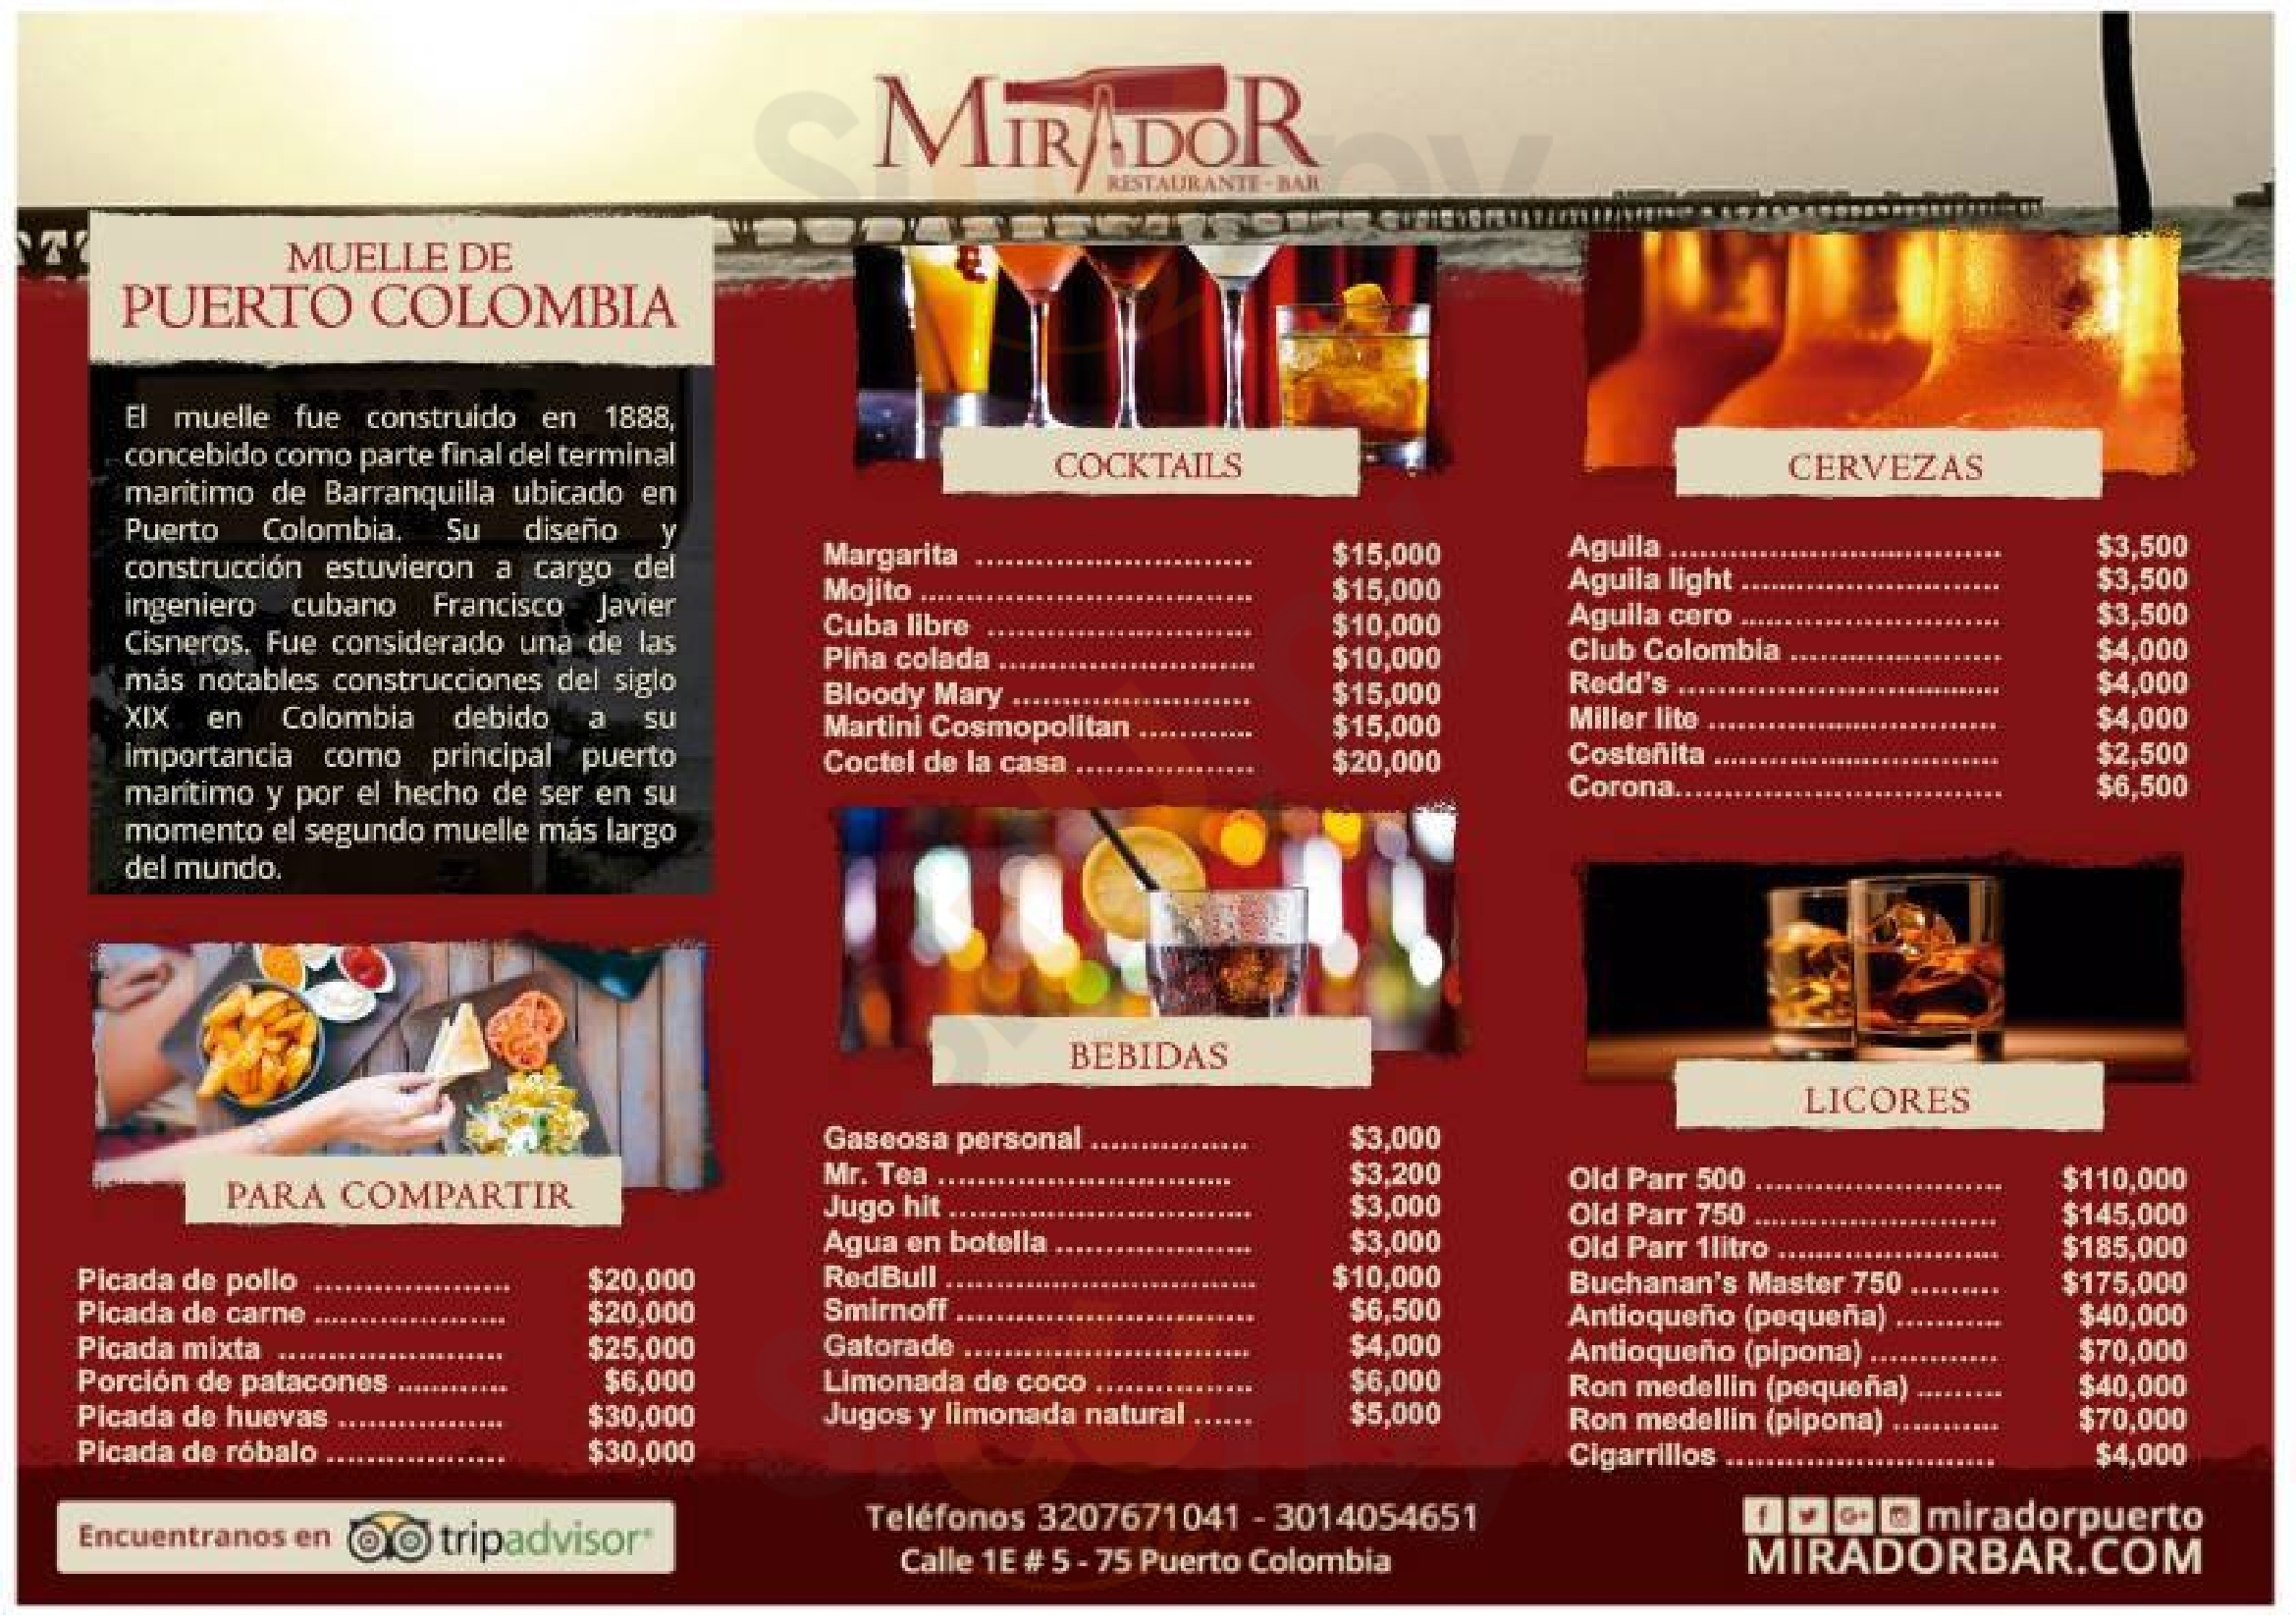 Mirador Restaurante Bar Puerto Colombia Menu - 1